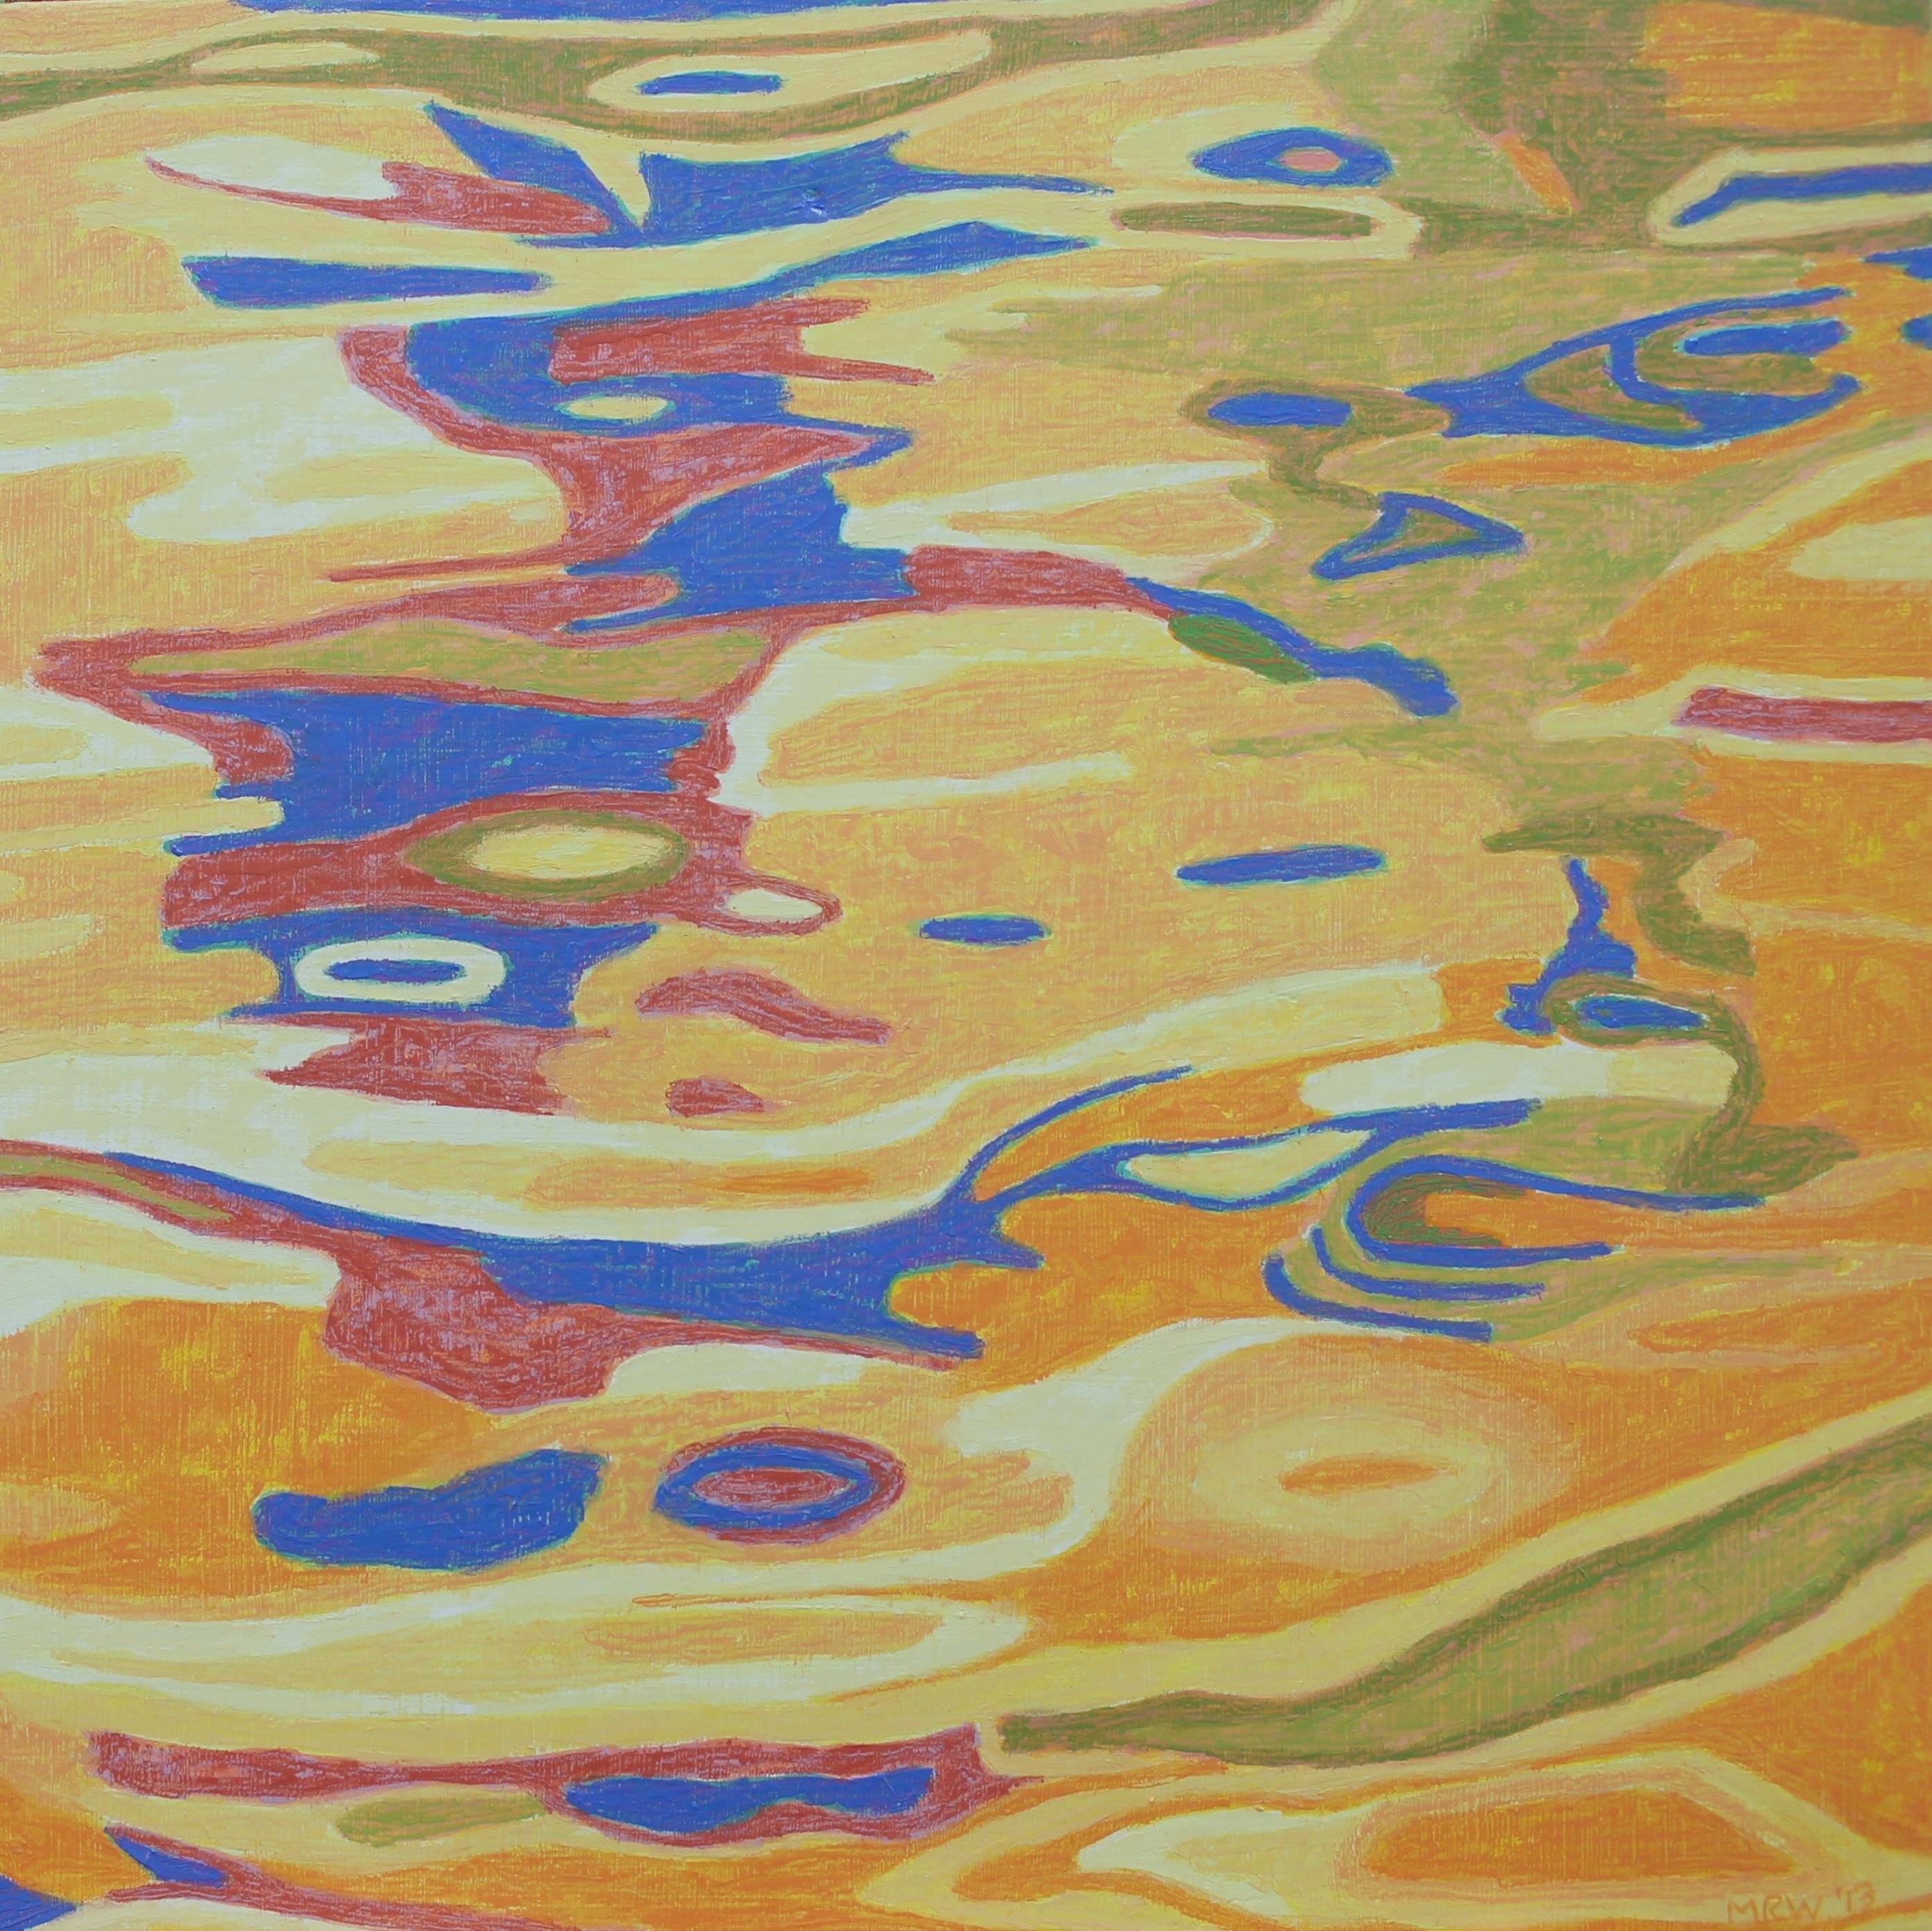 "Symphonie de l'eau", contemporain, paysage, jaune, bleu, orange, peinture à l'huile. - Painting de Marcia Wise